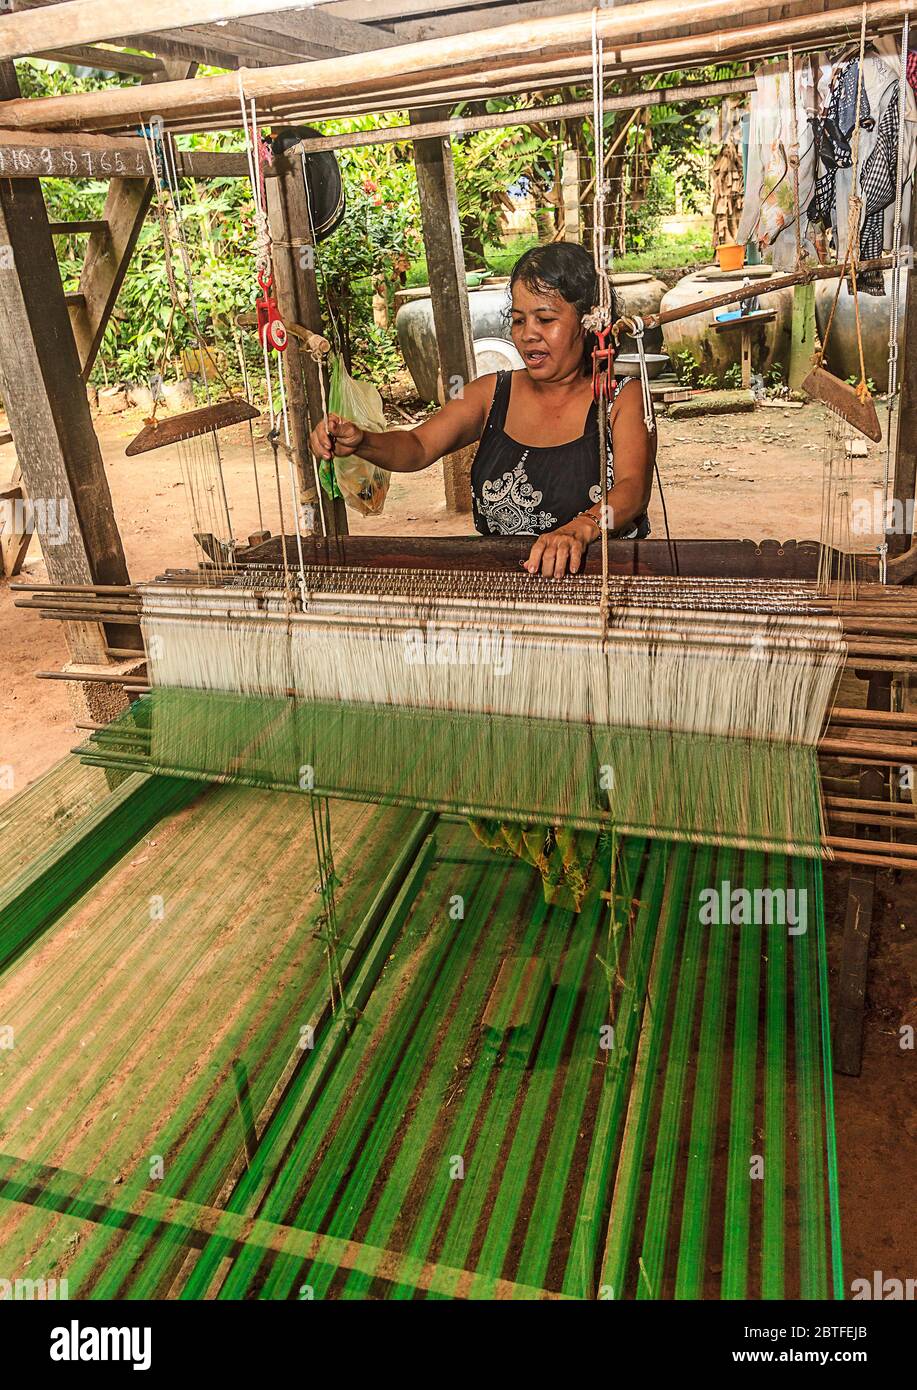 Seidenweberei auf Koh Dach Island, einer Insel vor dem Zentrum von Phnom Penh, Kambodscha. Hier webt eine Frau Seidenstoff von Hand auf einem Webstuhl unter ihrem Haus. Stockfoto